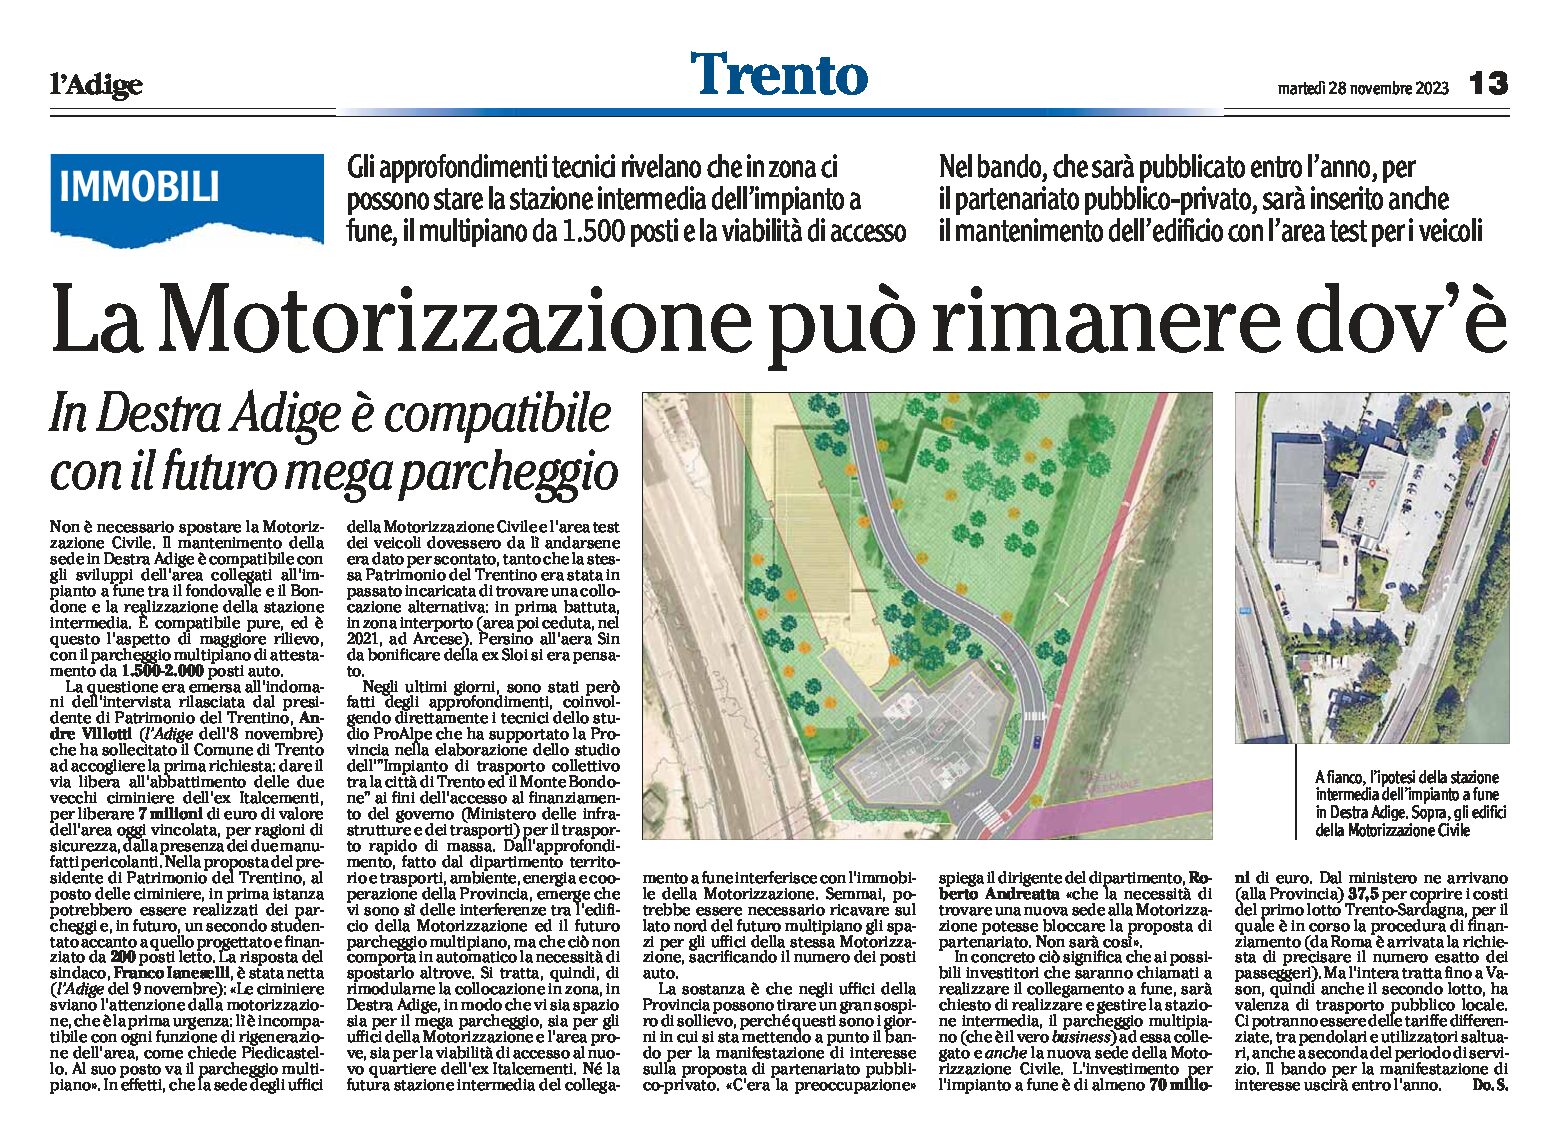 Trento, motorizzazione: può rimanere dov’è. In Destra Adige è compatibile con il futuro mega parcheggio